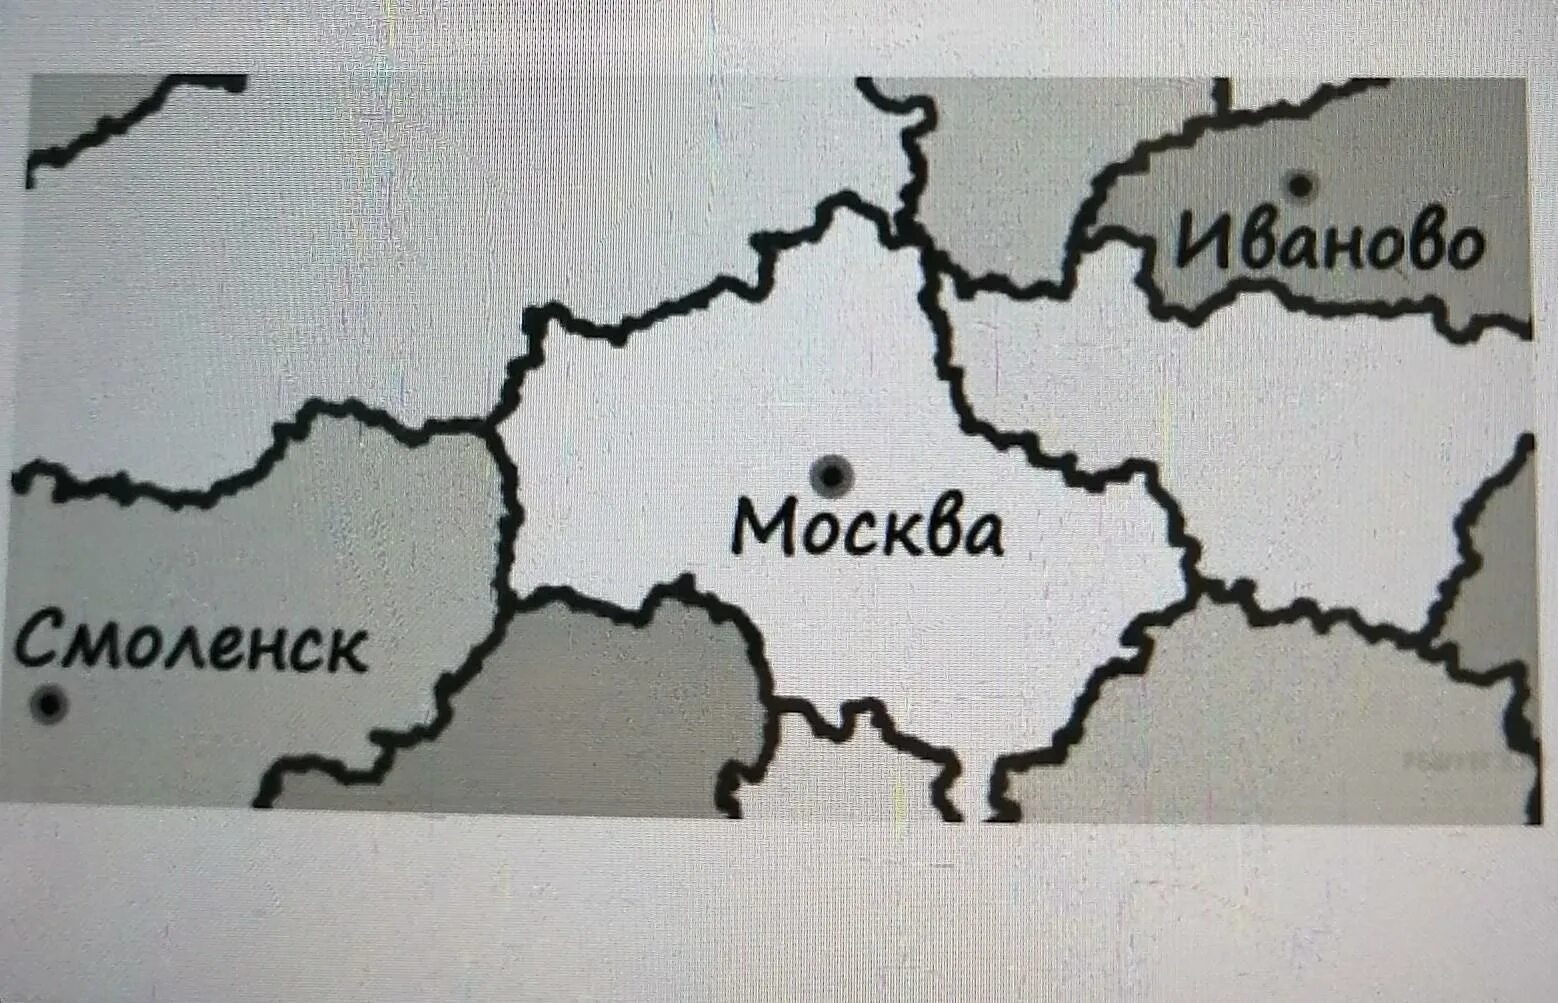 На рисунке изображена часть европейской части россии. На рисунке изображён фрагмент карты. На рисунке фрагмент карты европейской части. На отсунке изображен фрагмент карты европецскоц части Росси. На рисунке изображена карта европейской части России.